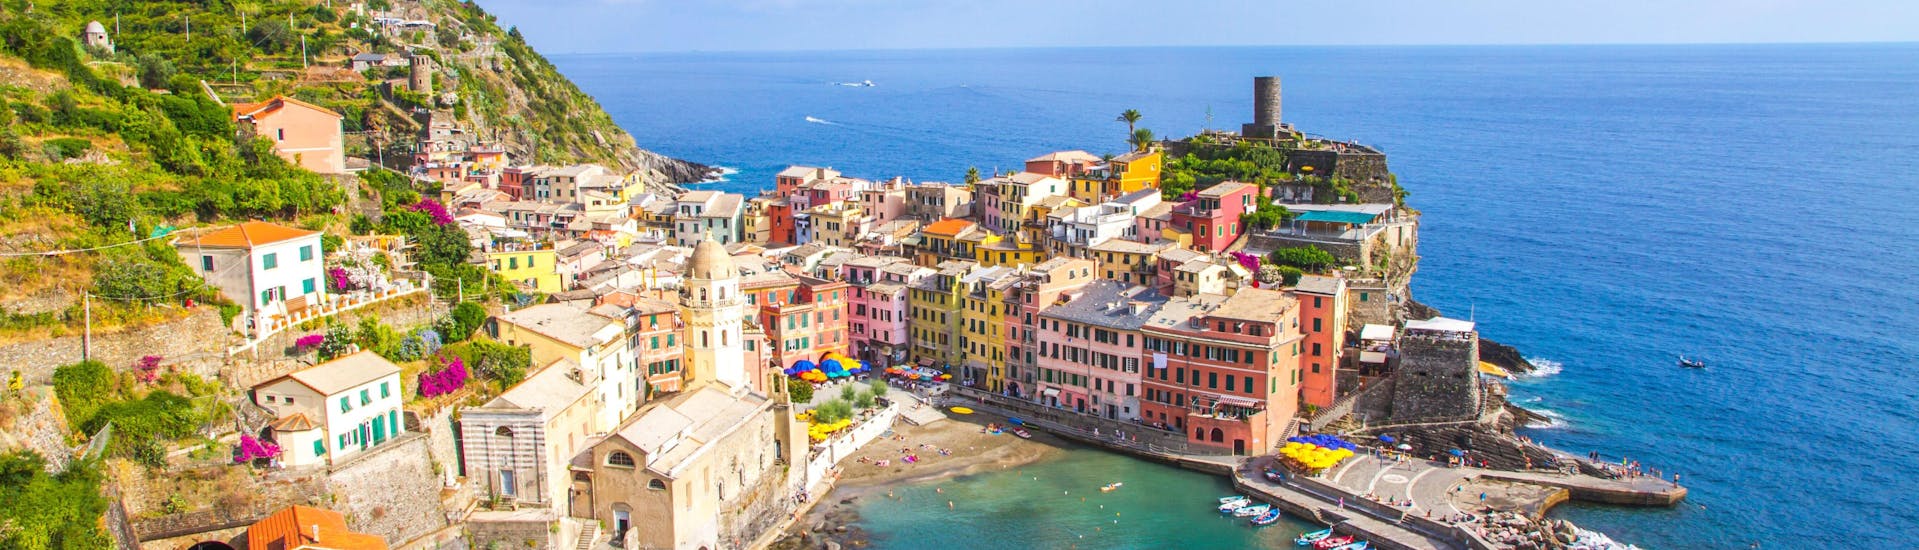 Uitzicht over Vernazza, een populaire bestemming voor boottochten in Cinque Terre.